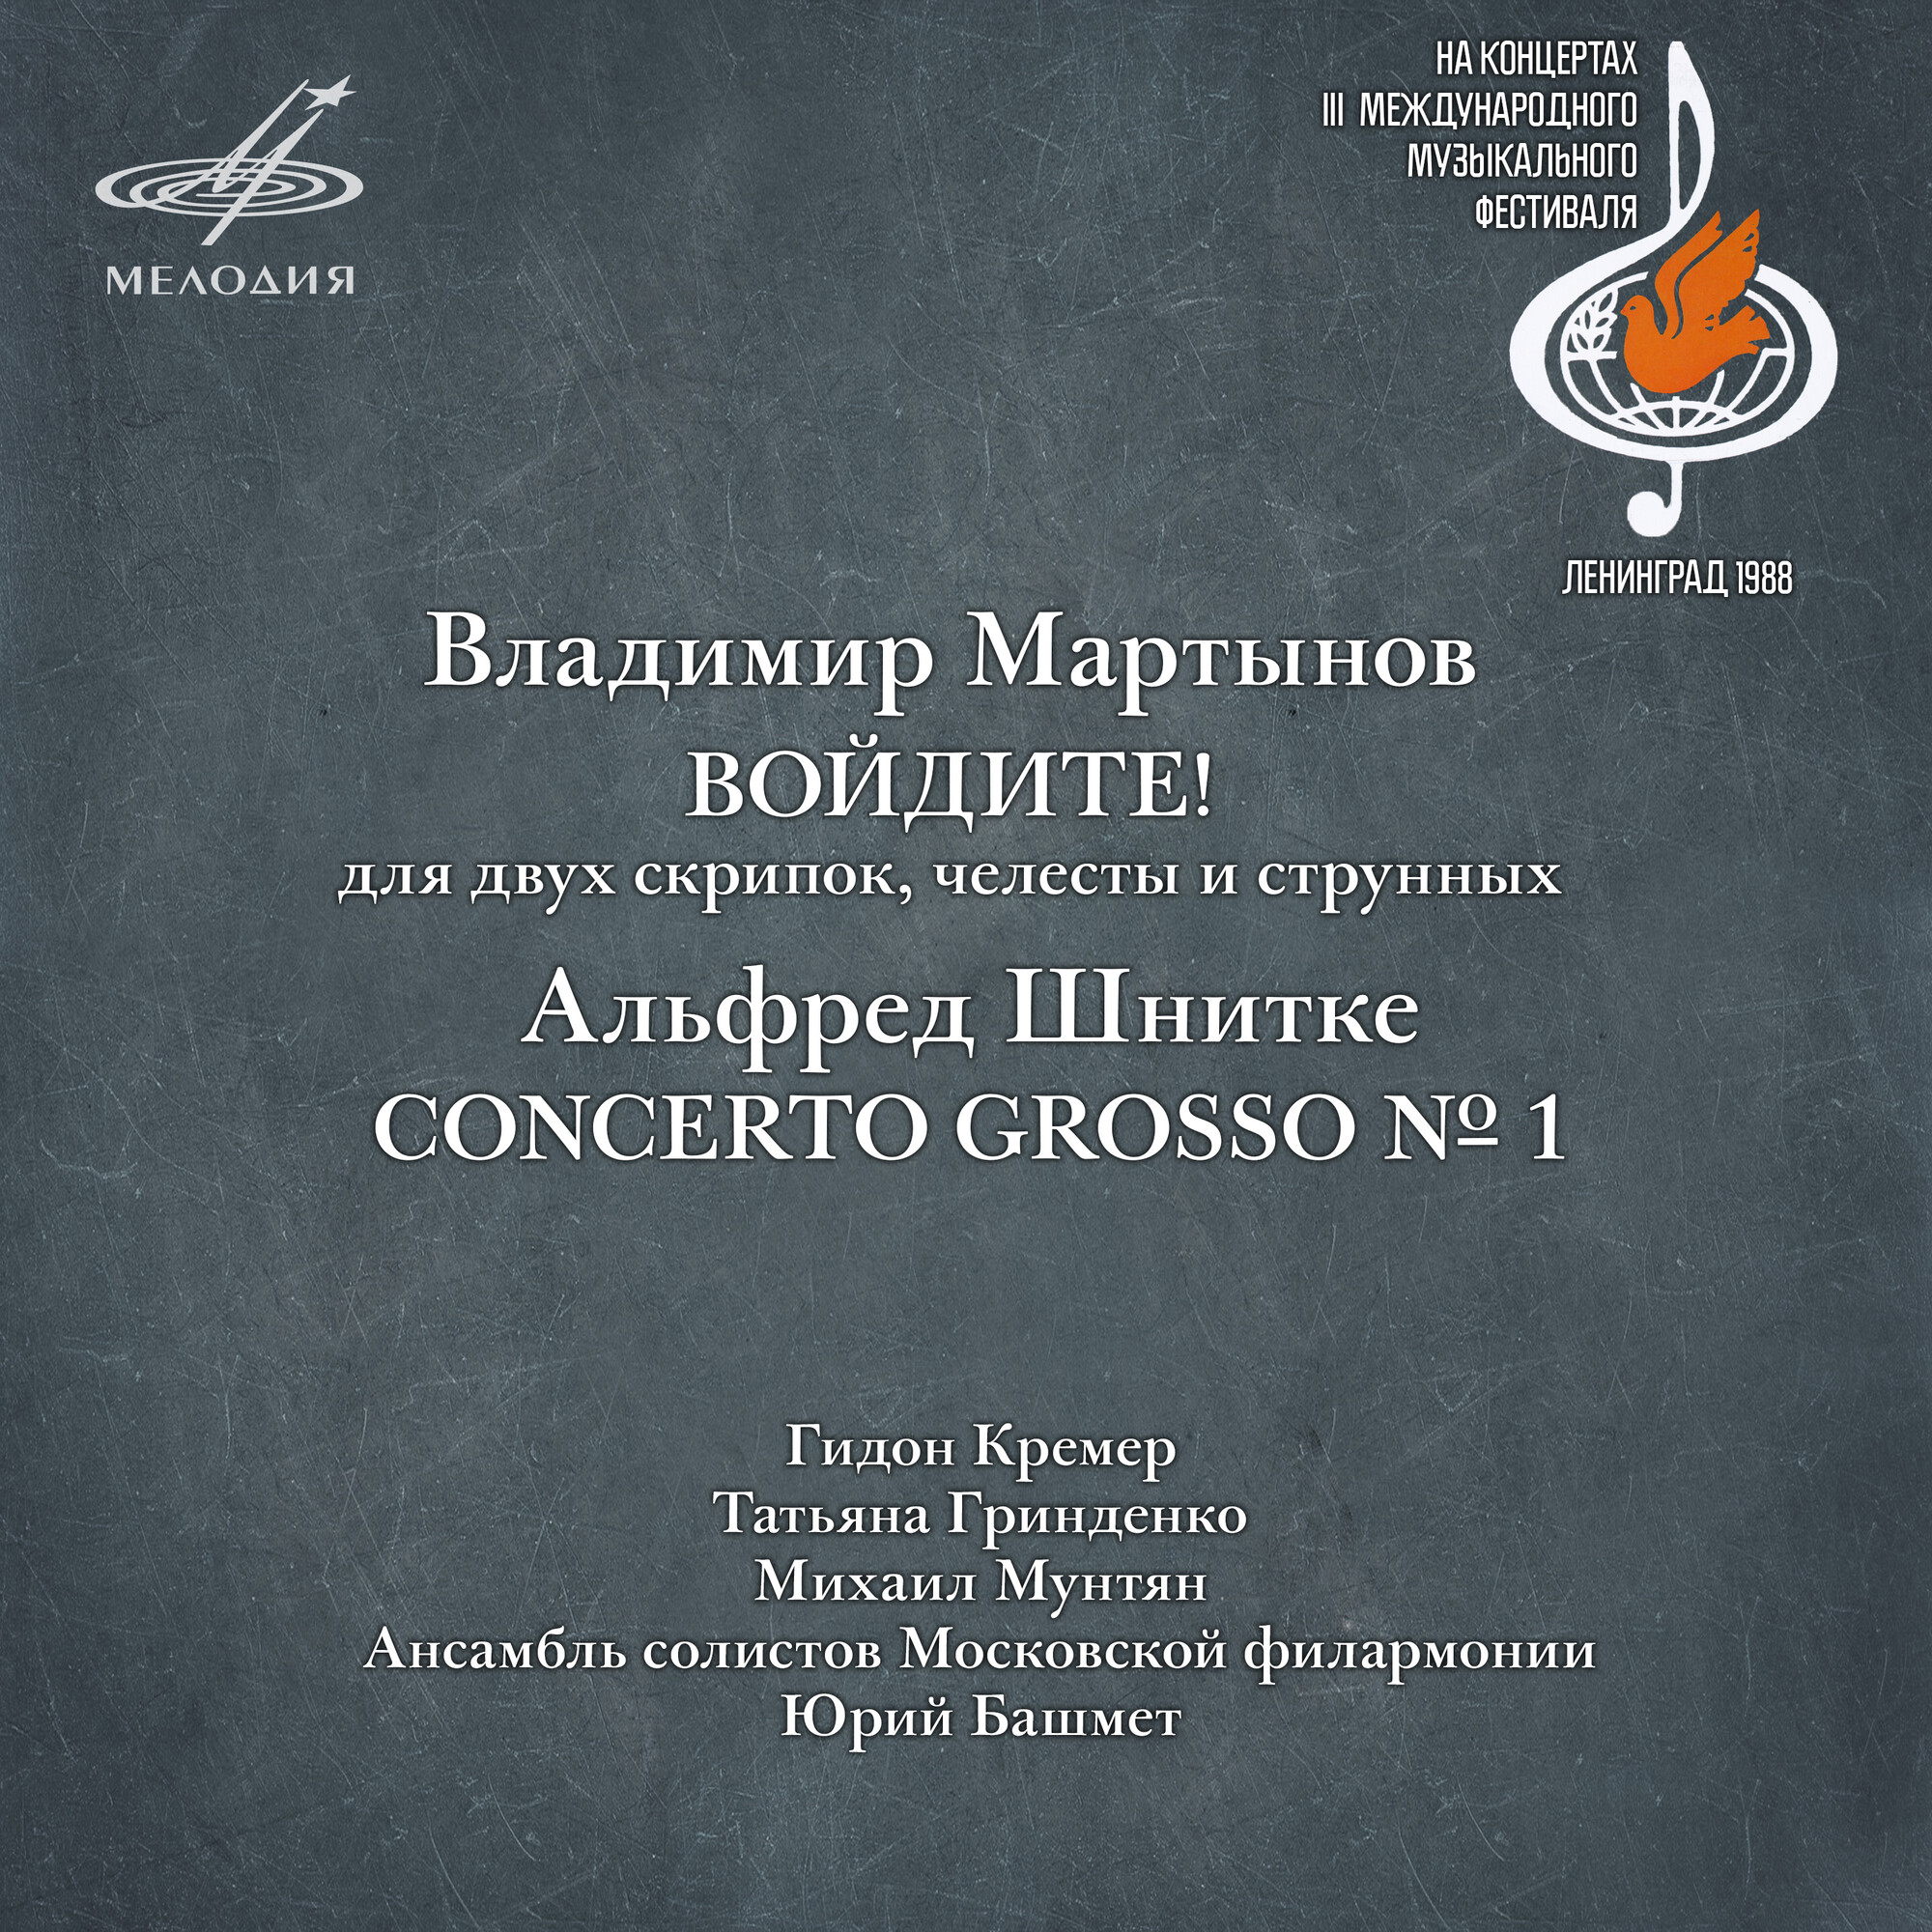 Владимир Мартынов: Войдите! - Альфред Шнитке: Concerto Grosso No. 1 (Live)